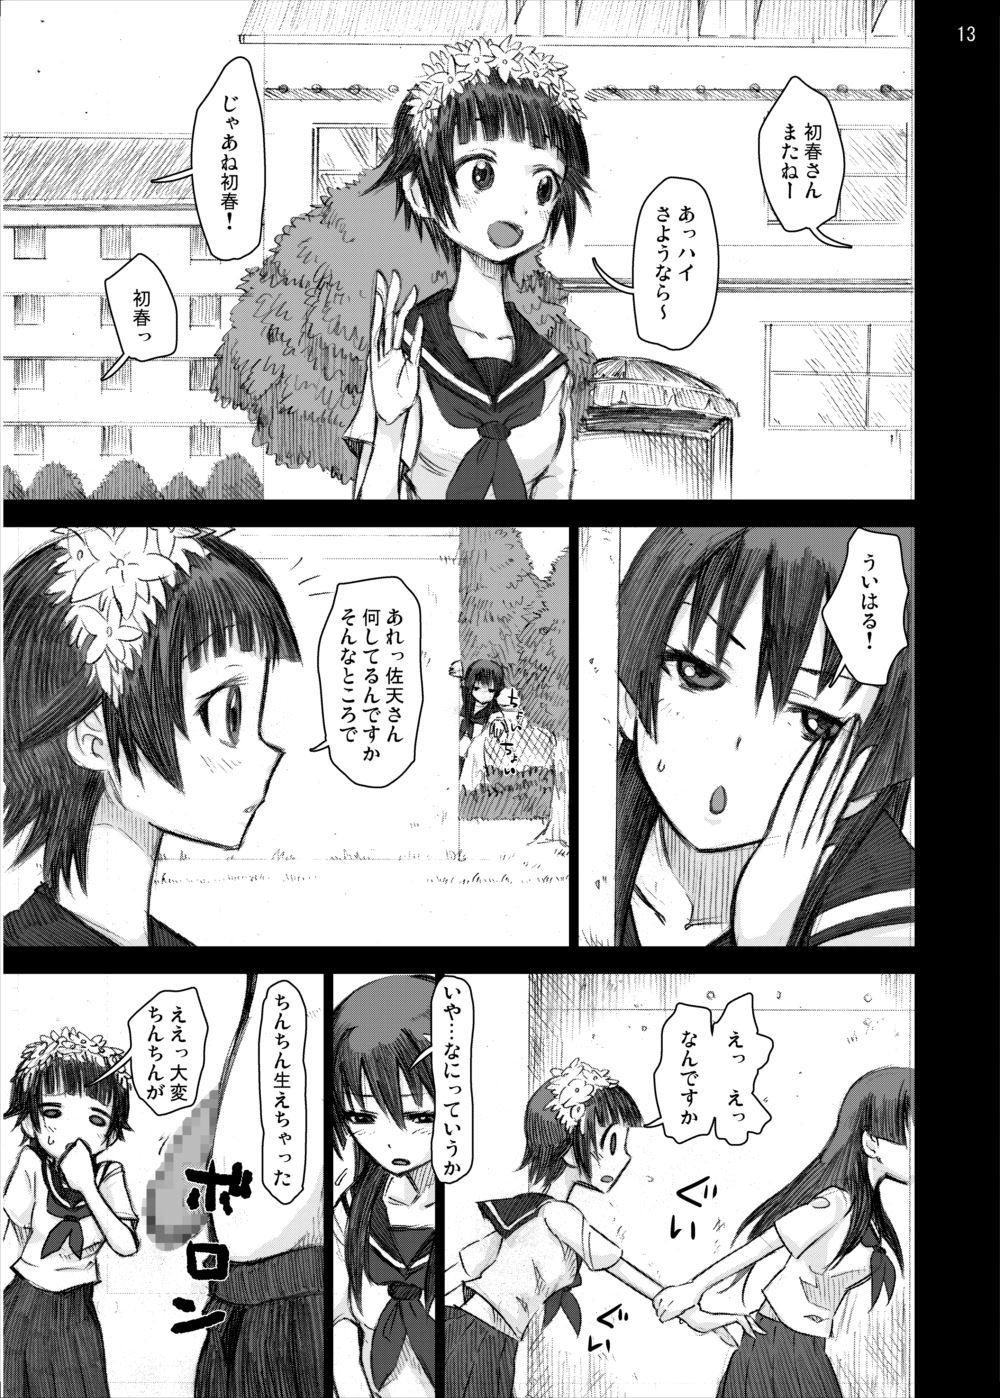 Alternative Ryoujoku Jigoku 4 - Futanari Stalker Rape... - Toaru kagaku no railgun Rope - Page 12